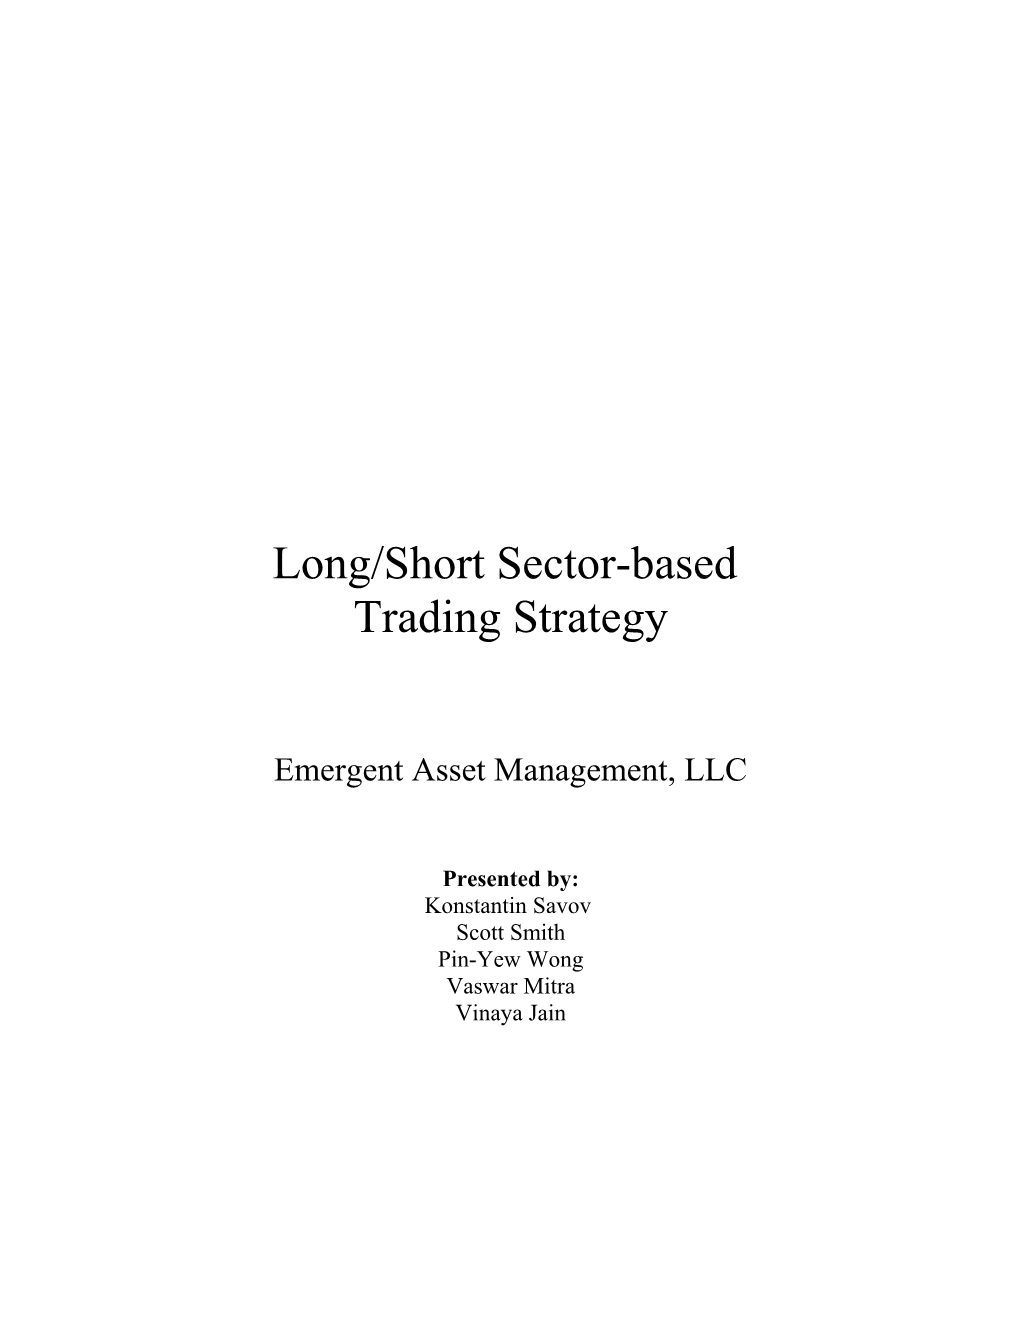 Long/Short Sector-Based